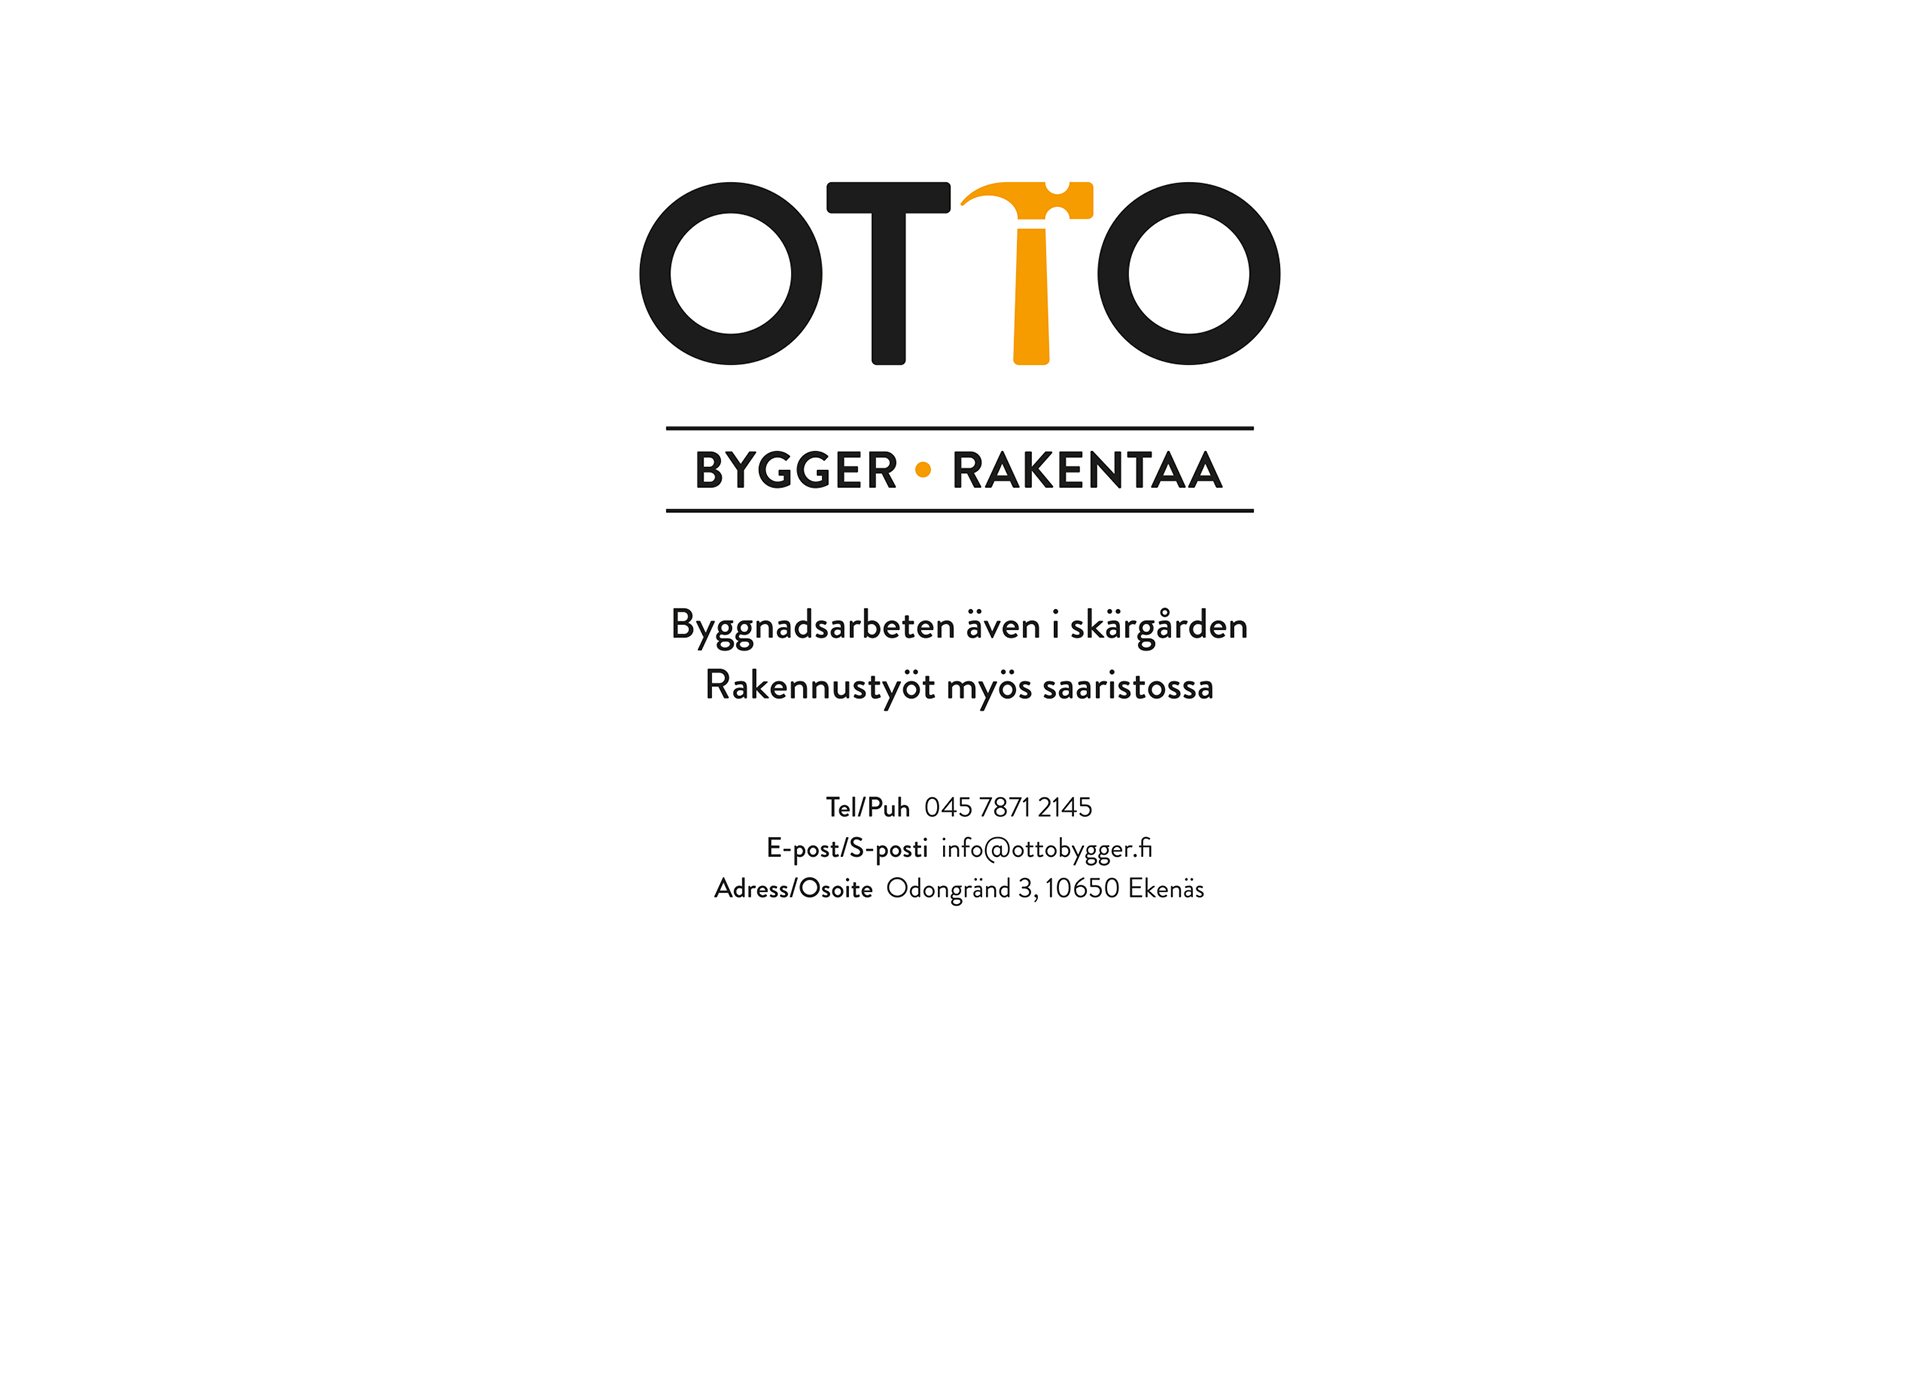 Skärmdump för ottorakentaa.fi